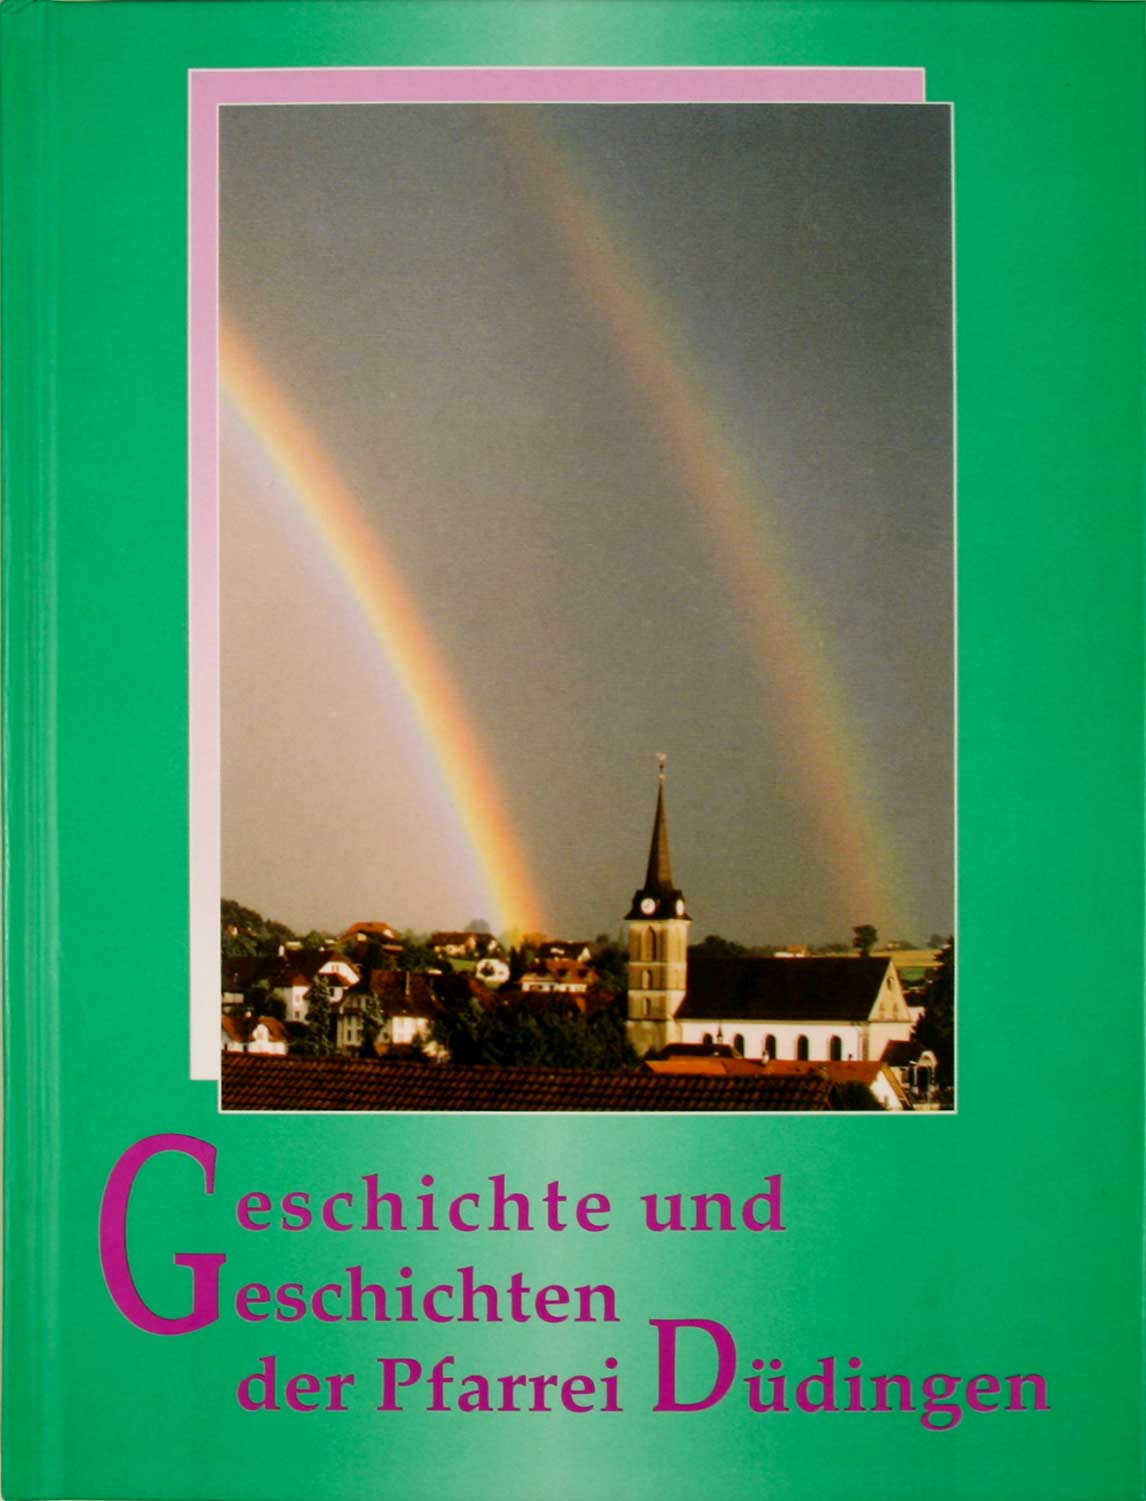 BRUGGER, Alfons: - Geschichte und Geschichten der Pfarrei Ddingen. Ein Beitrag zur Volkskunde.